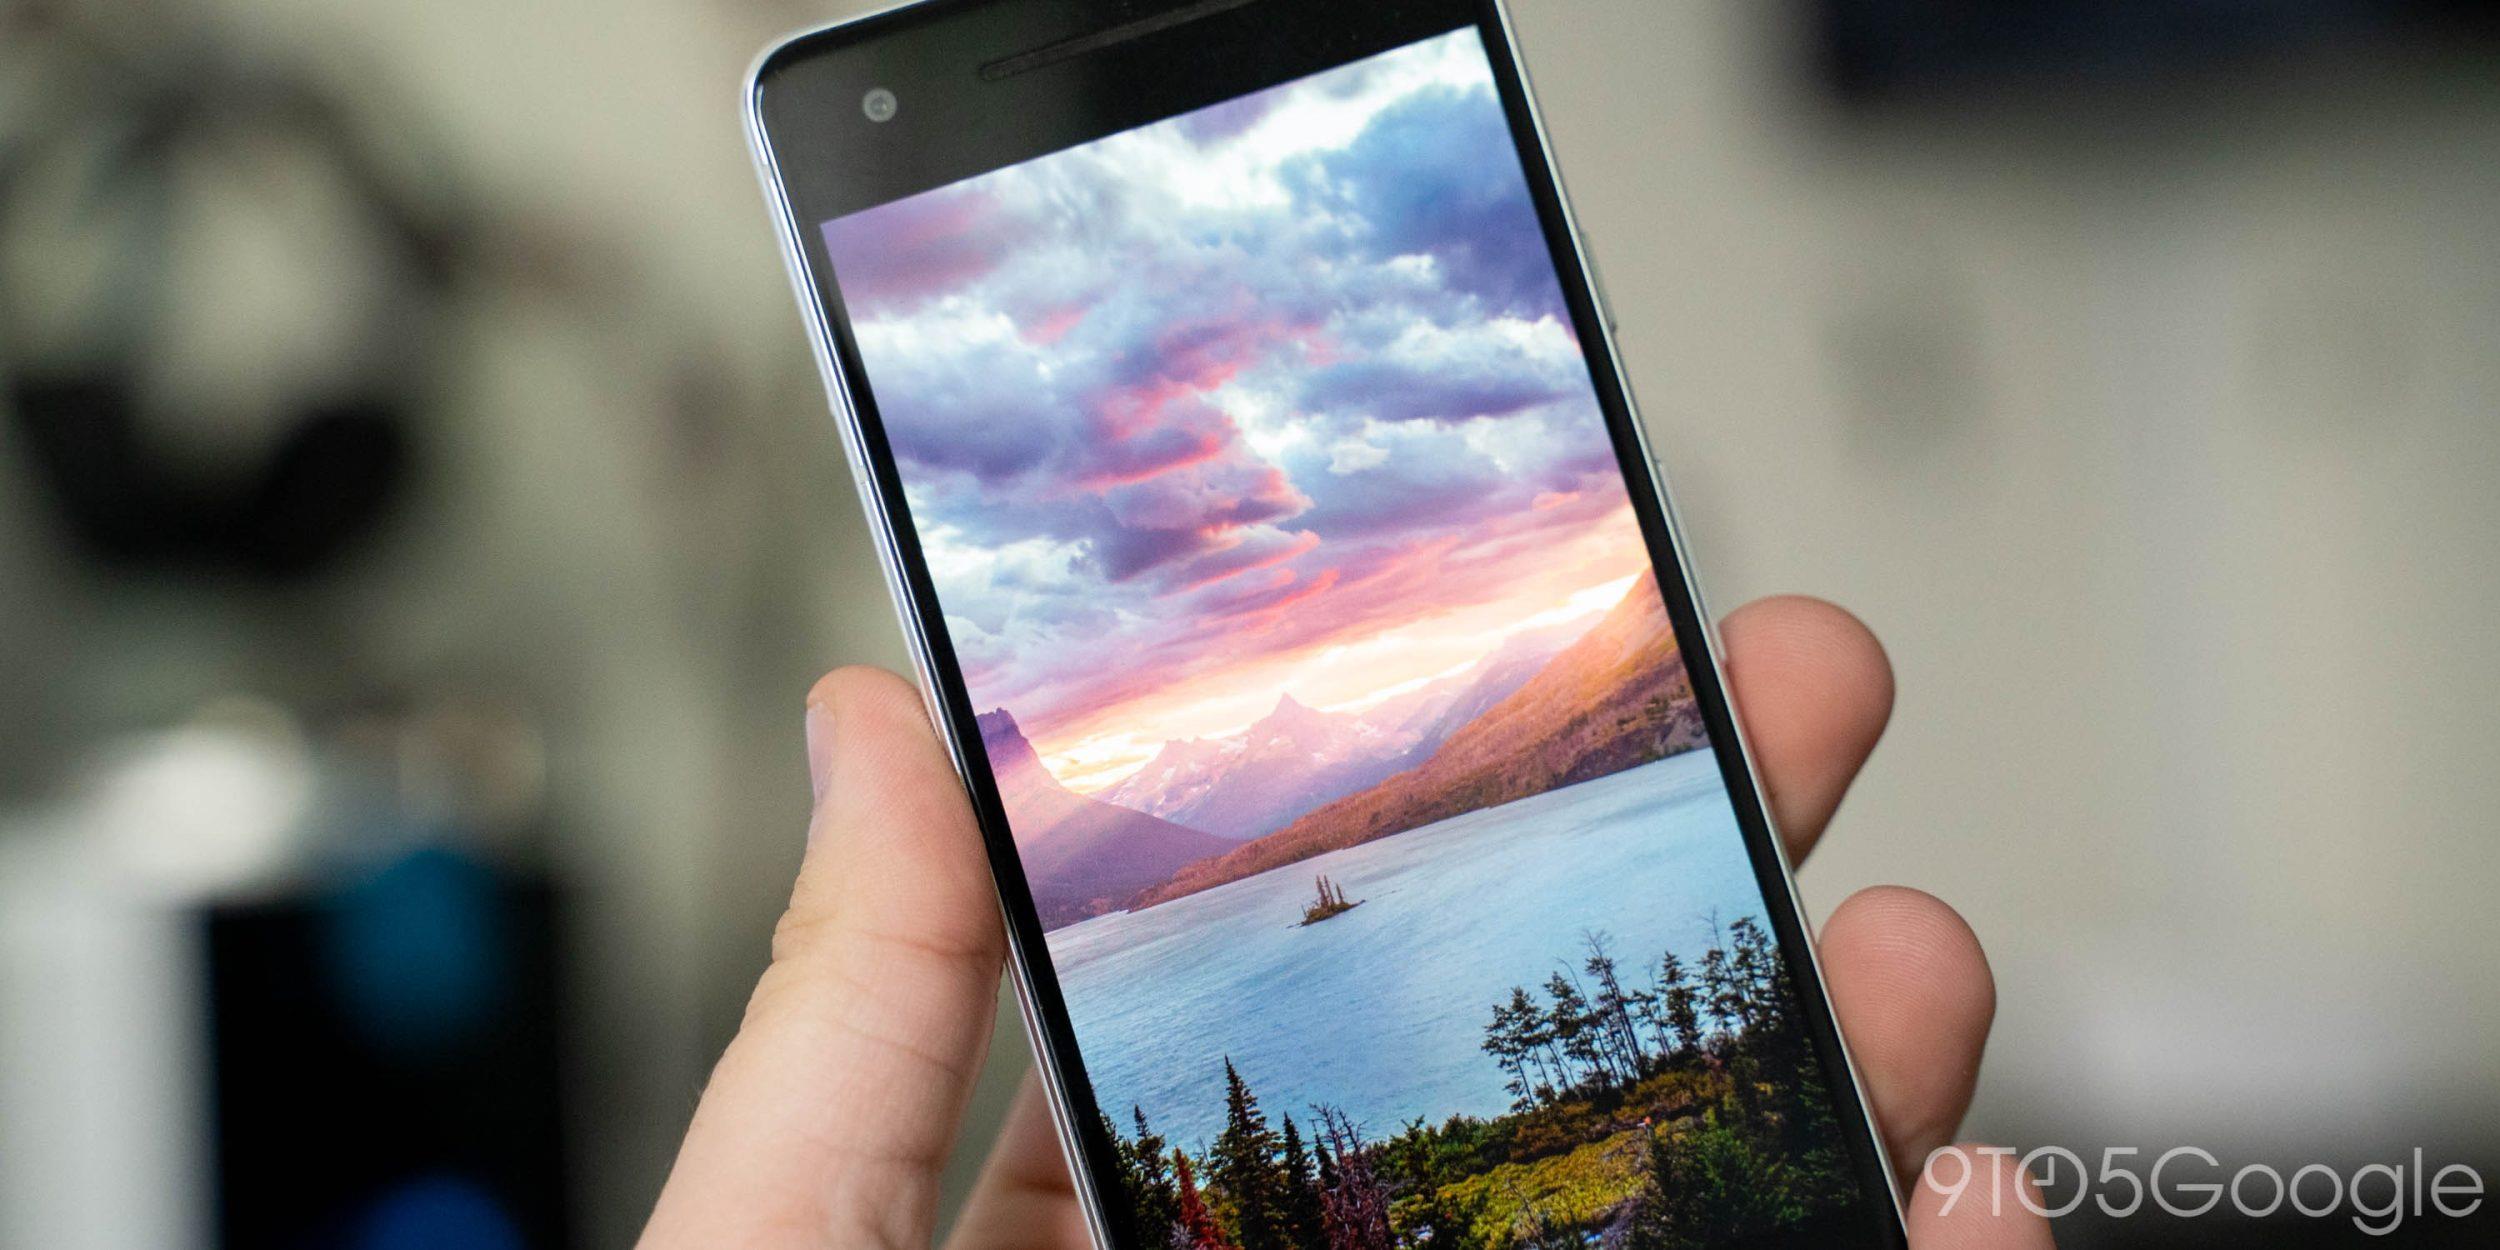 Vén màn bí ẩn phía sau ‘bức ảnh tử thần’ khiến hàng loạt điện thoại Android trở thành cục gạch - Ảnh 2.